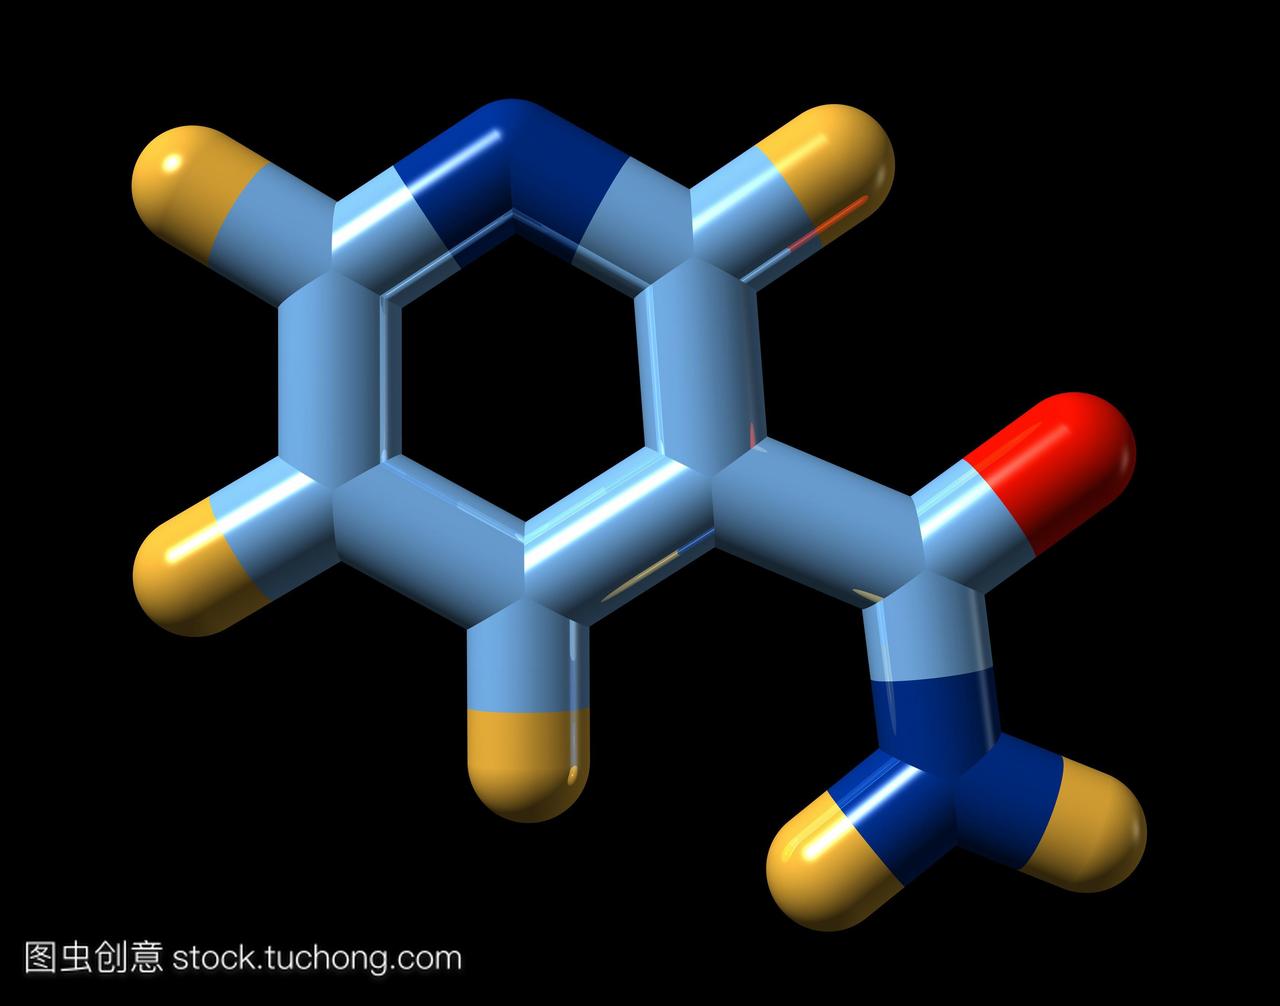 生素B3也称为烟酸ornicotinic酸。它的化学式C